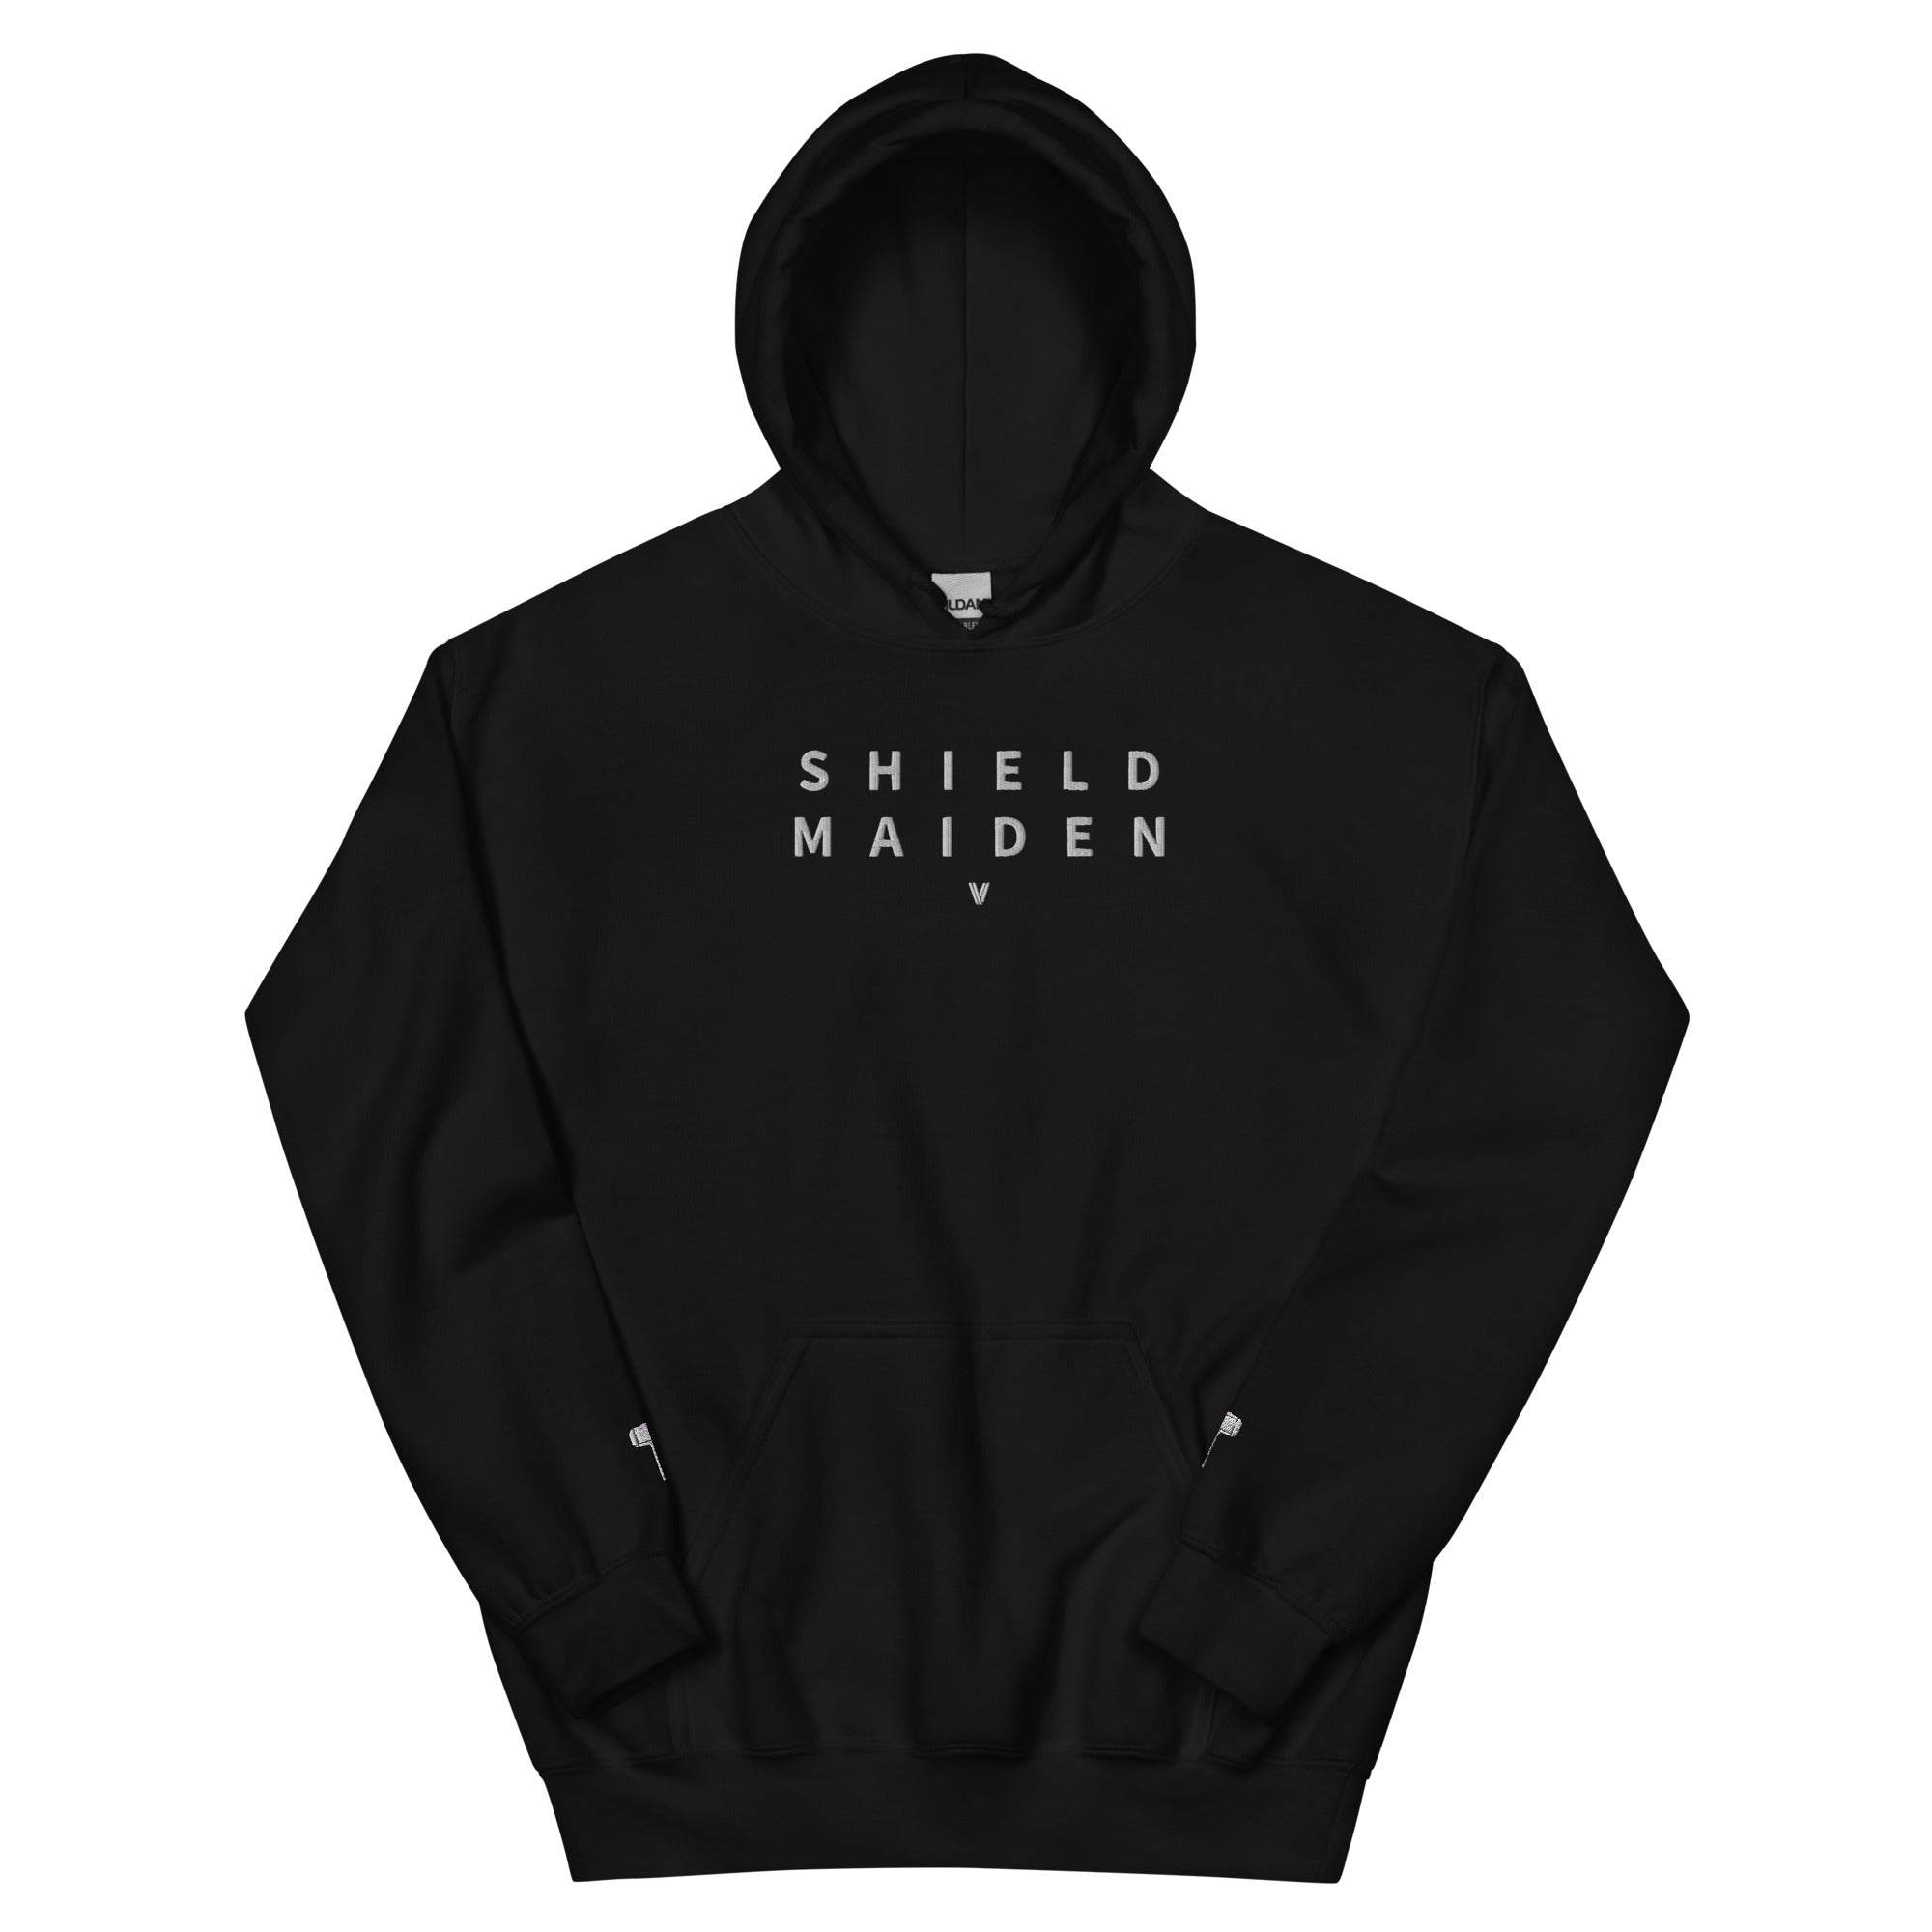 shield maiden hoodie